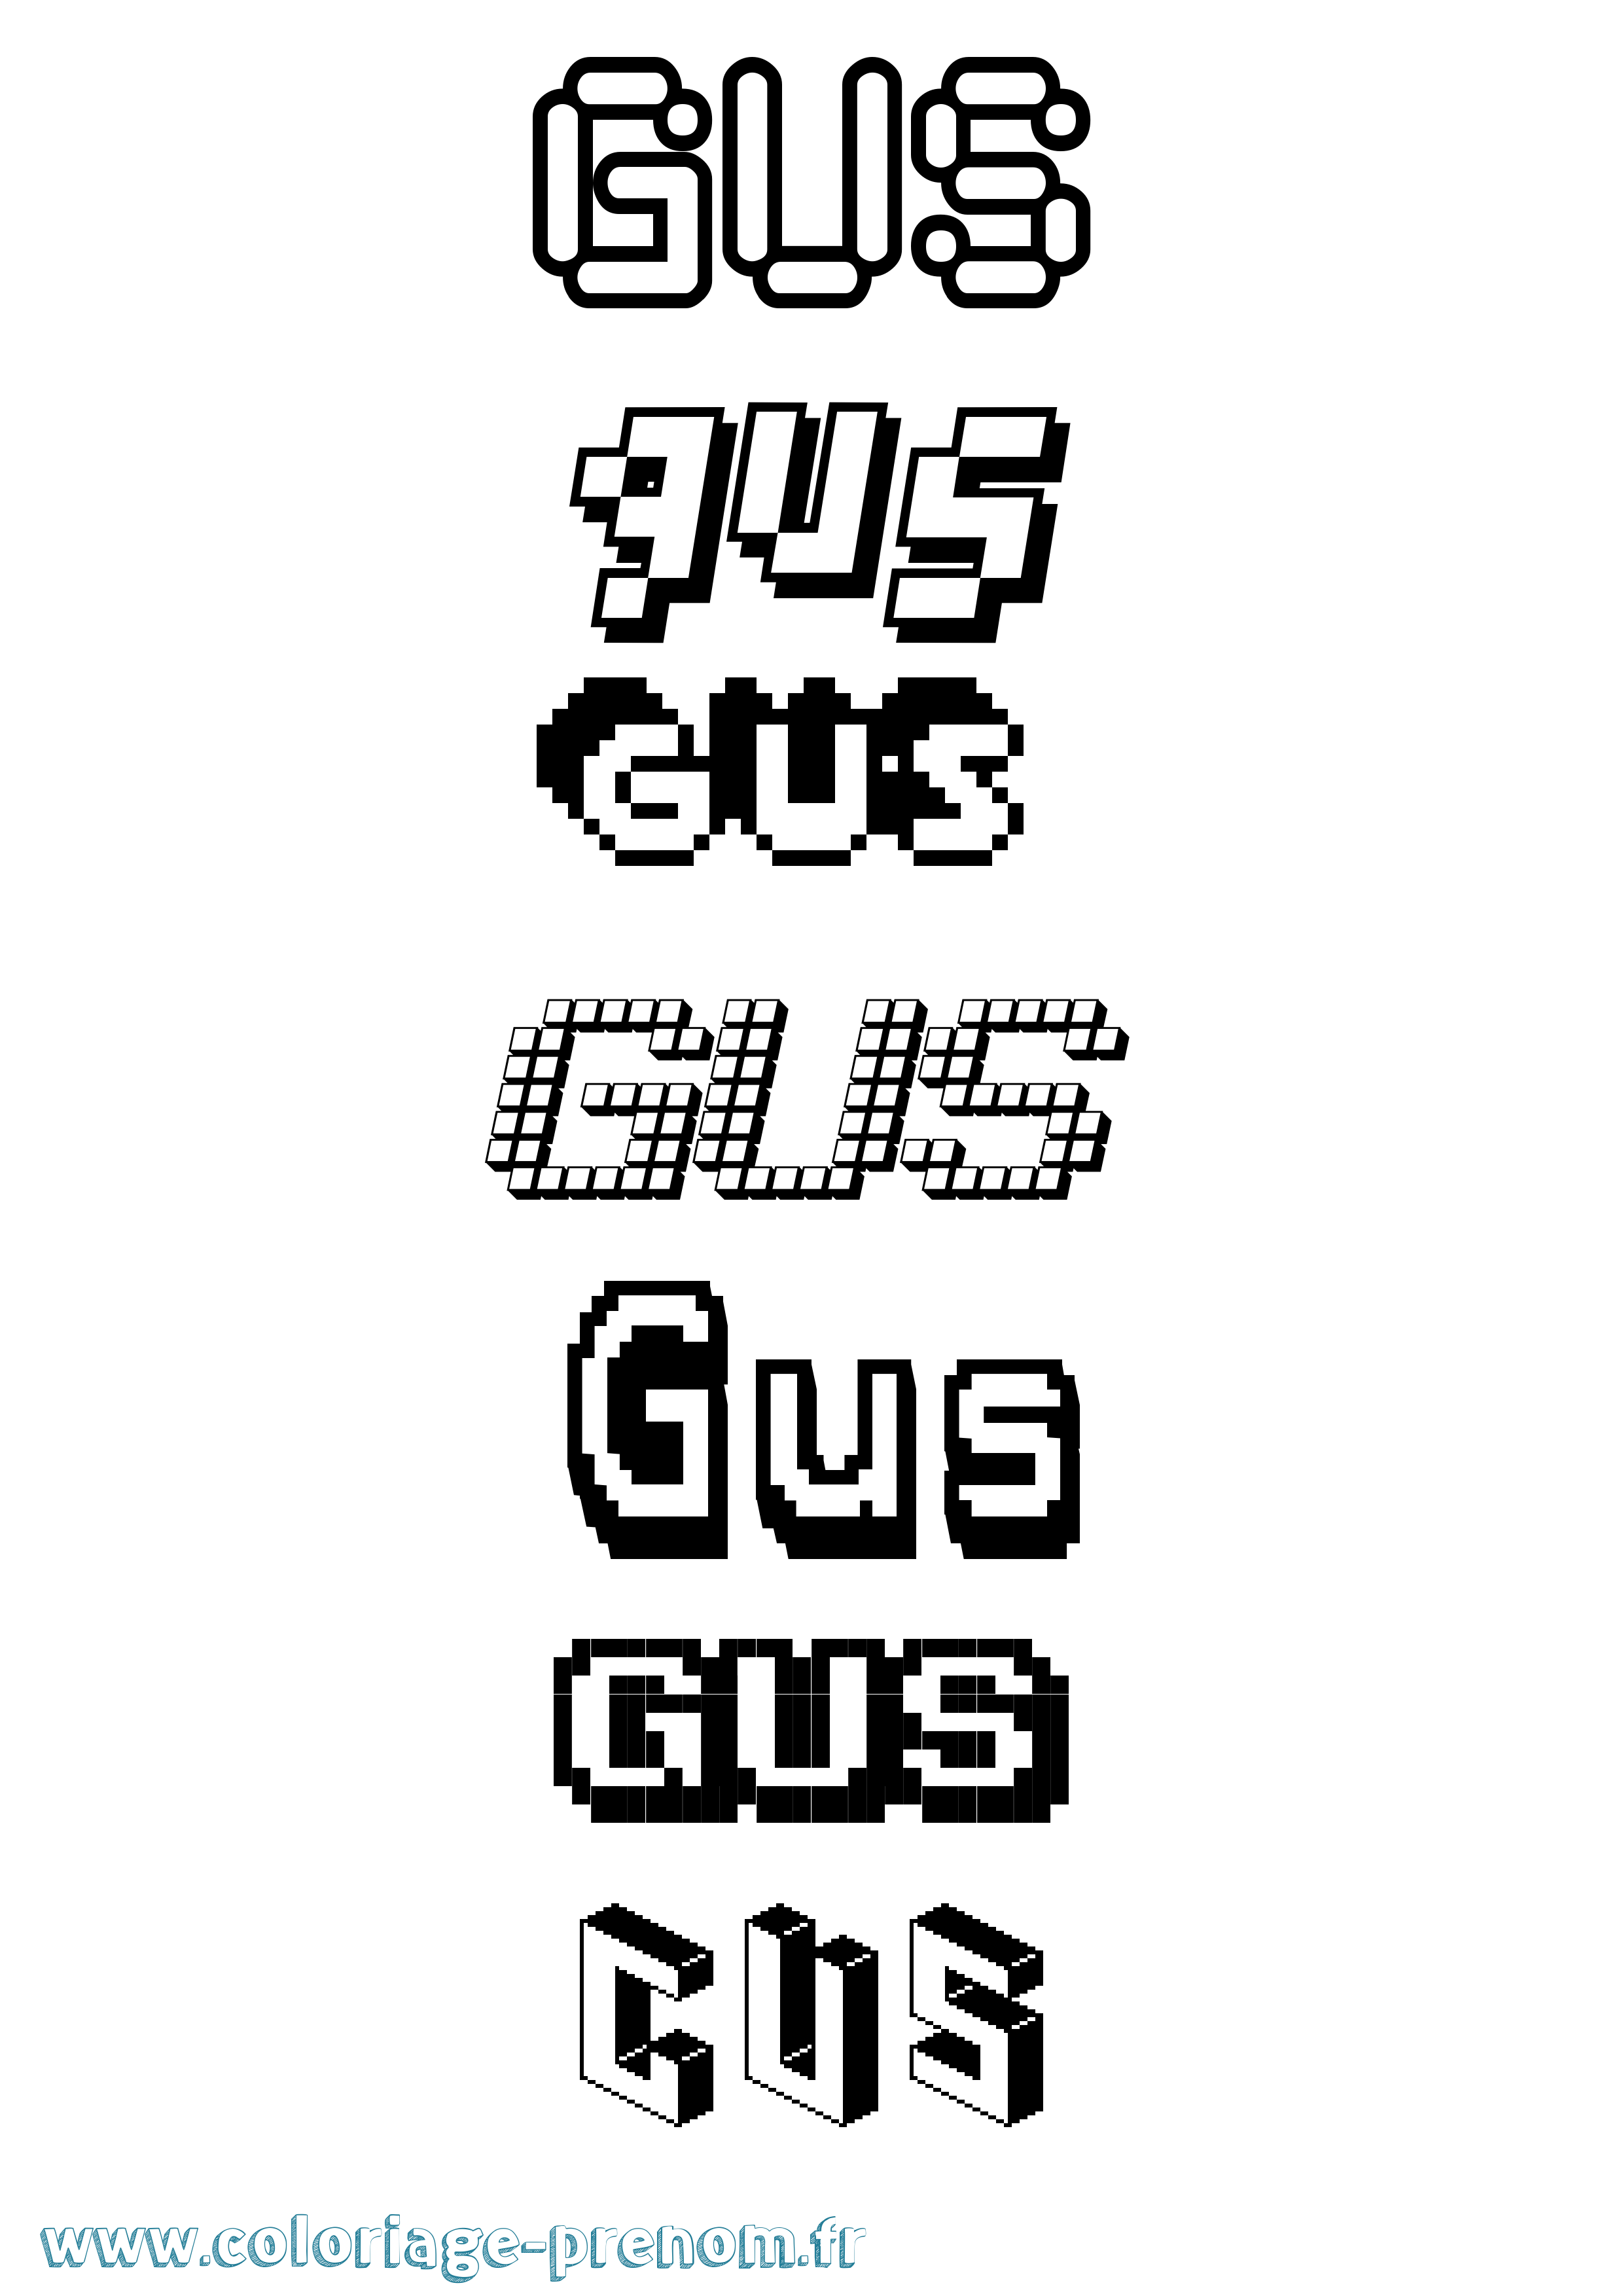 Coloriage prénom Gus Pixel